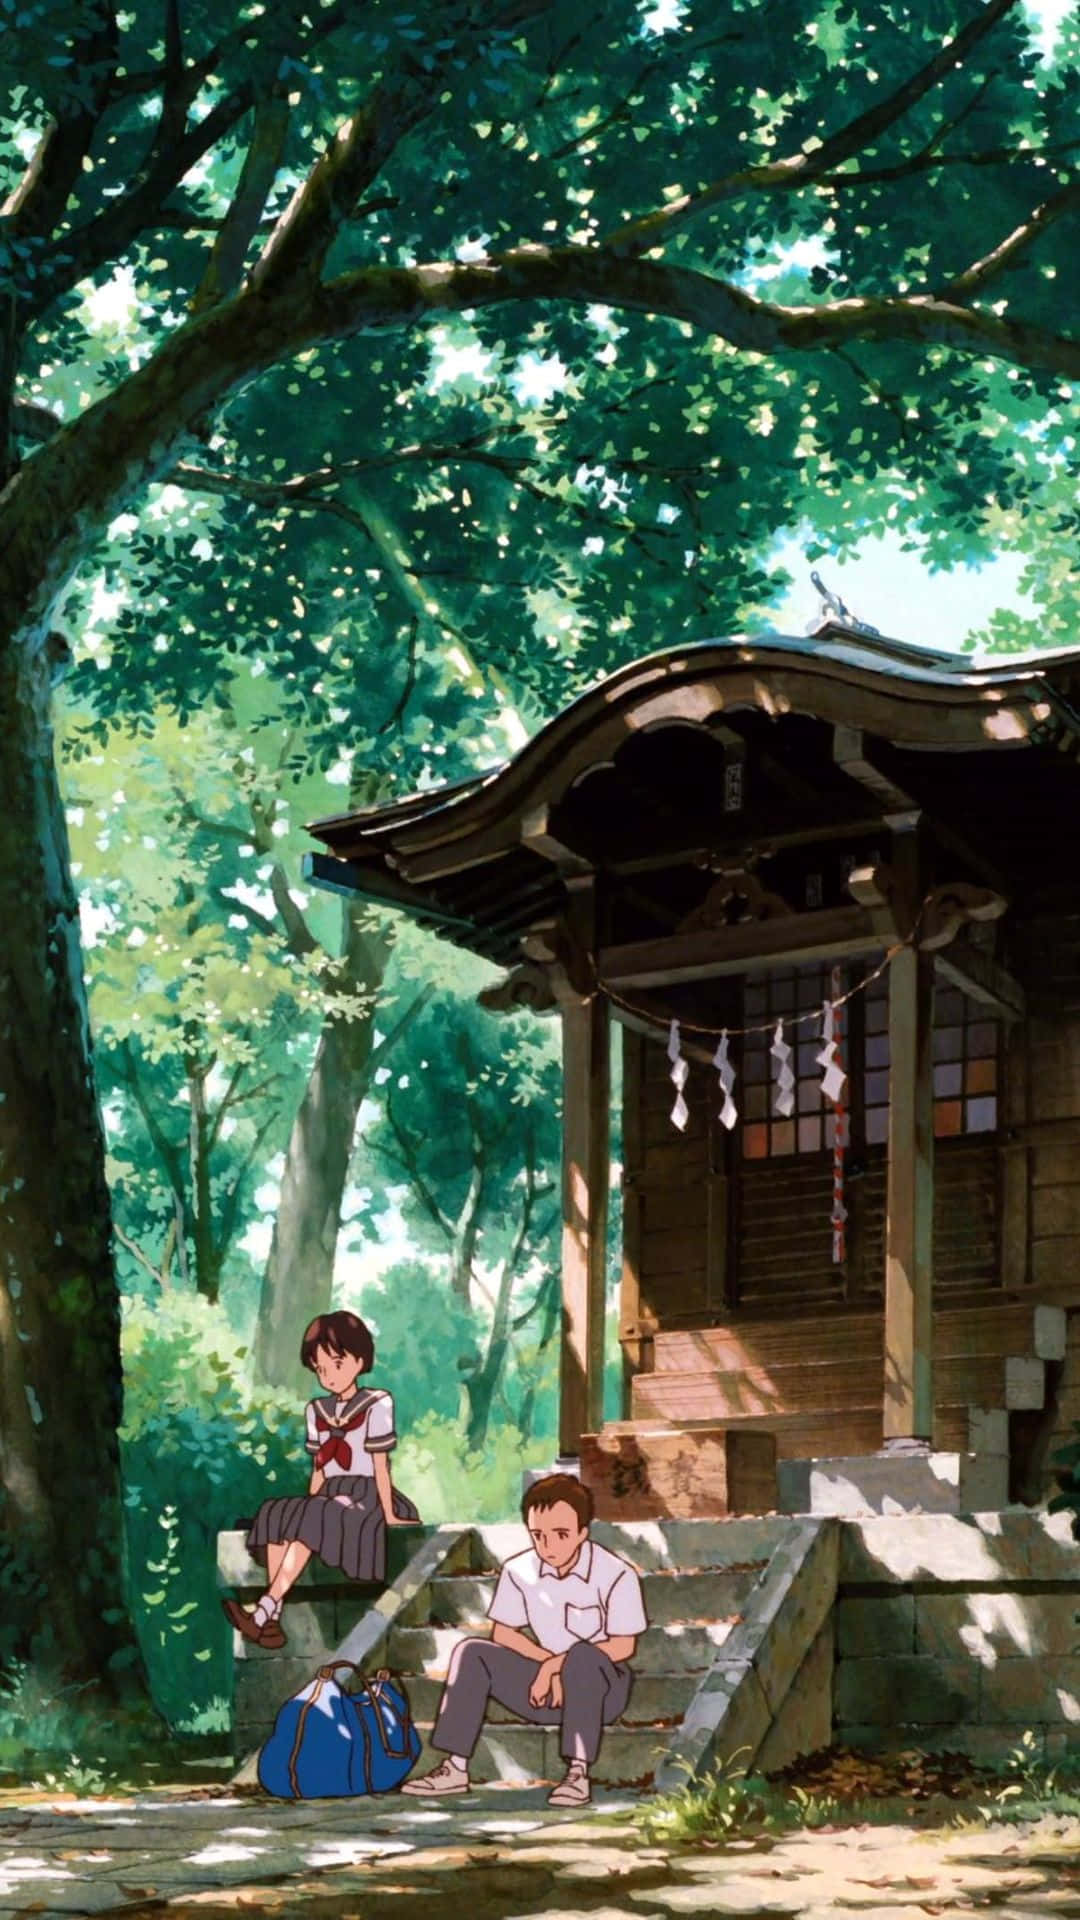 Abrazatu Aventura Interior Y Prepárate Para Descubrir El Mundo Mágico De Studio Ghibli Con Un Teléfono Ghibli. Fondo de pantalla